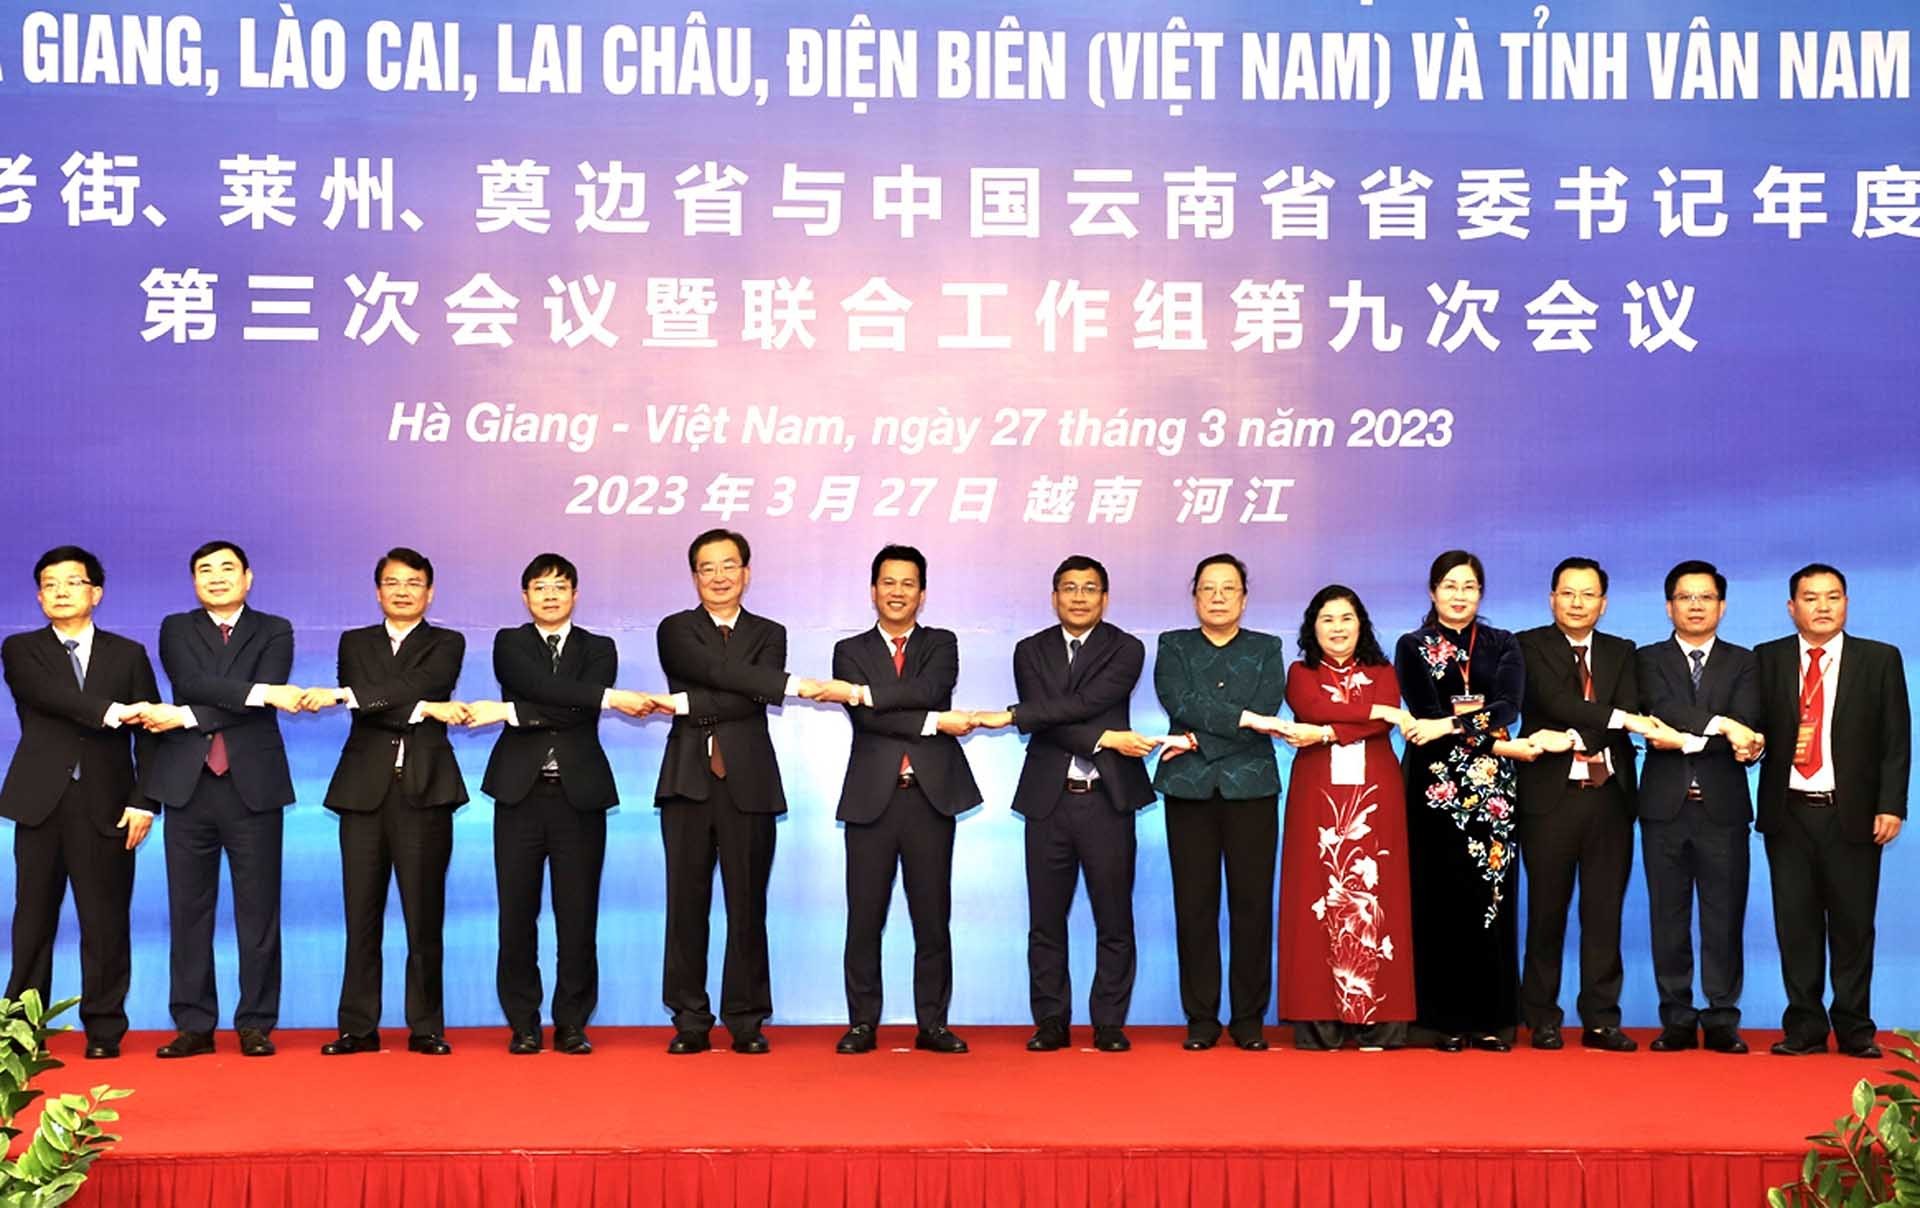 Lãnh đạo tỉnh Hà Giang (Việt Nam), Vân Nam (Trung Quốc) và các đại biểu của hai nước chụp ảnh lưu niệm tại hội nghị. (Nguồn: TTXVN)